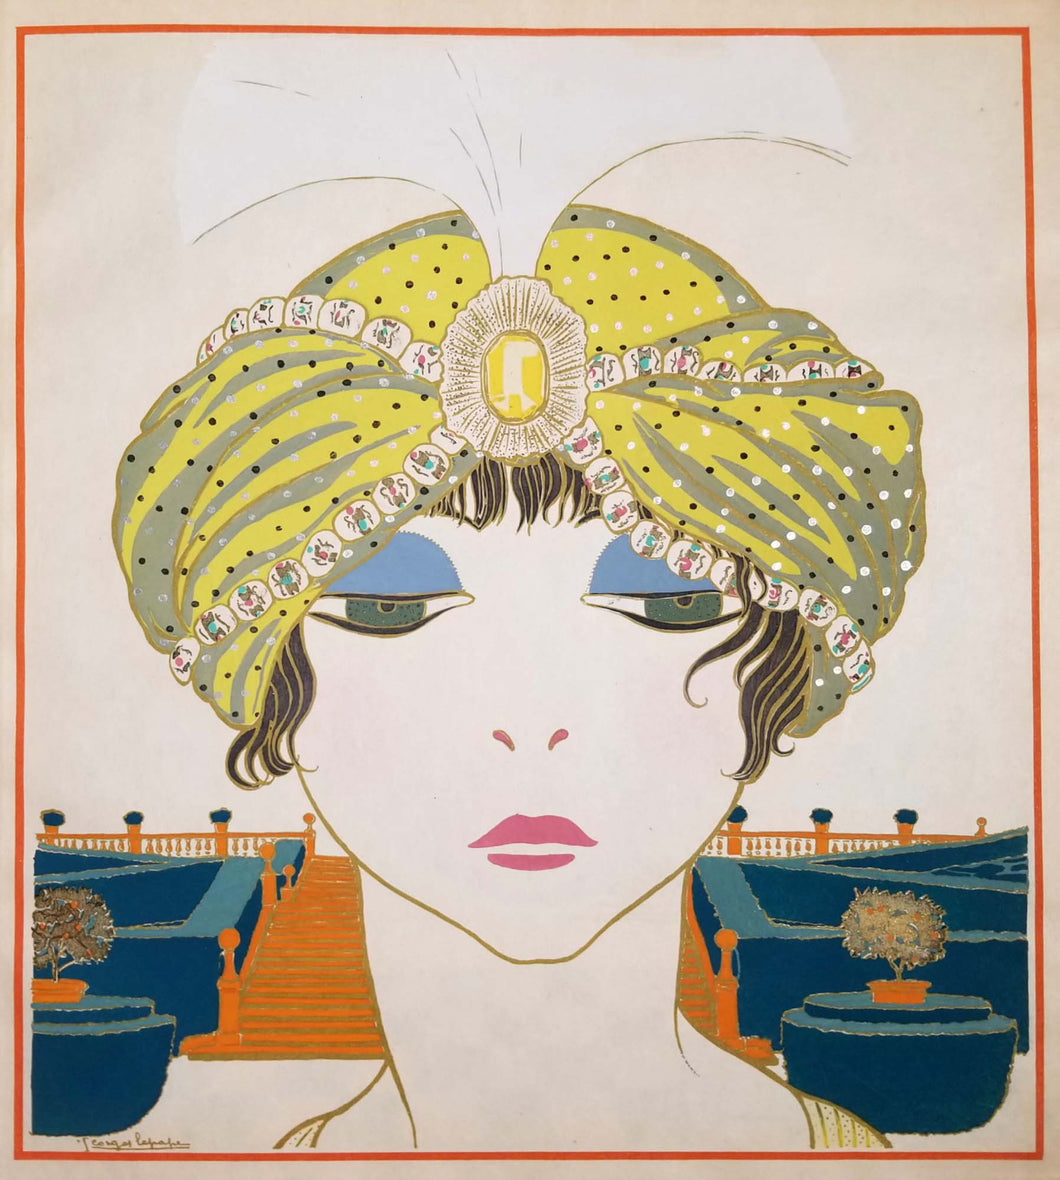 [Femme au turban]. Les Choses de Paul Poiret vues par Georges Lepape. 1911.